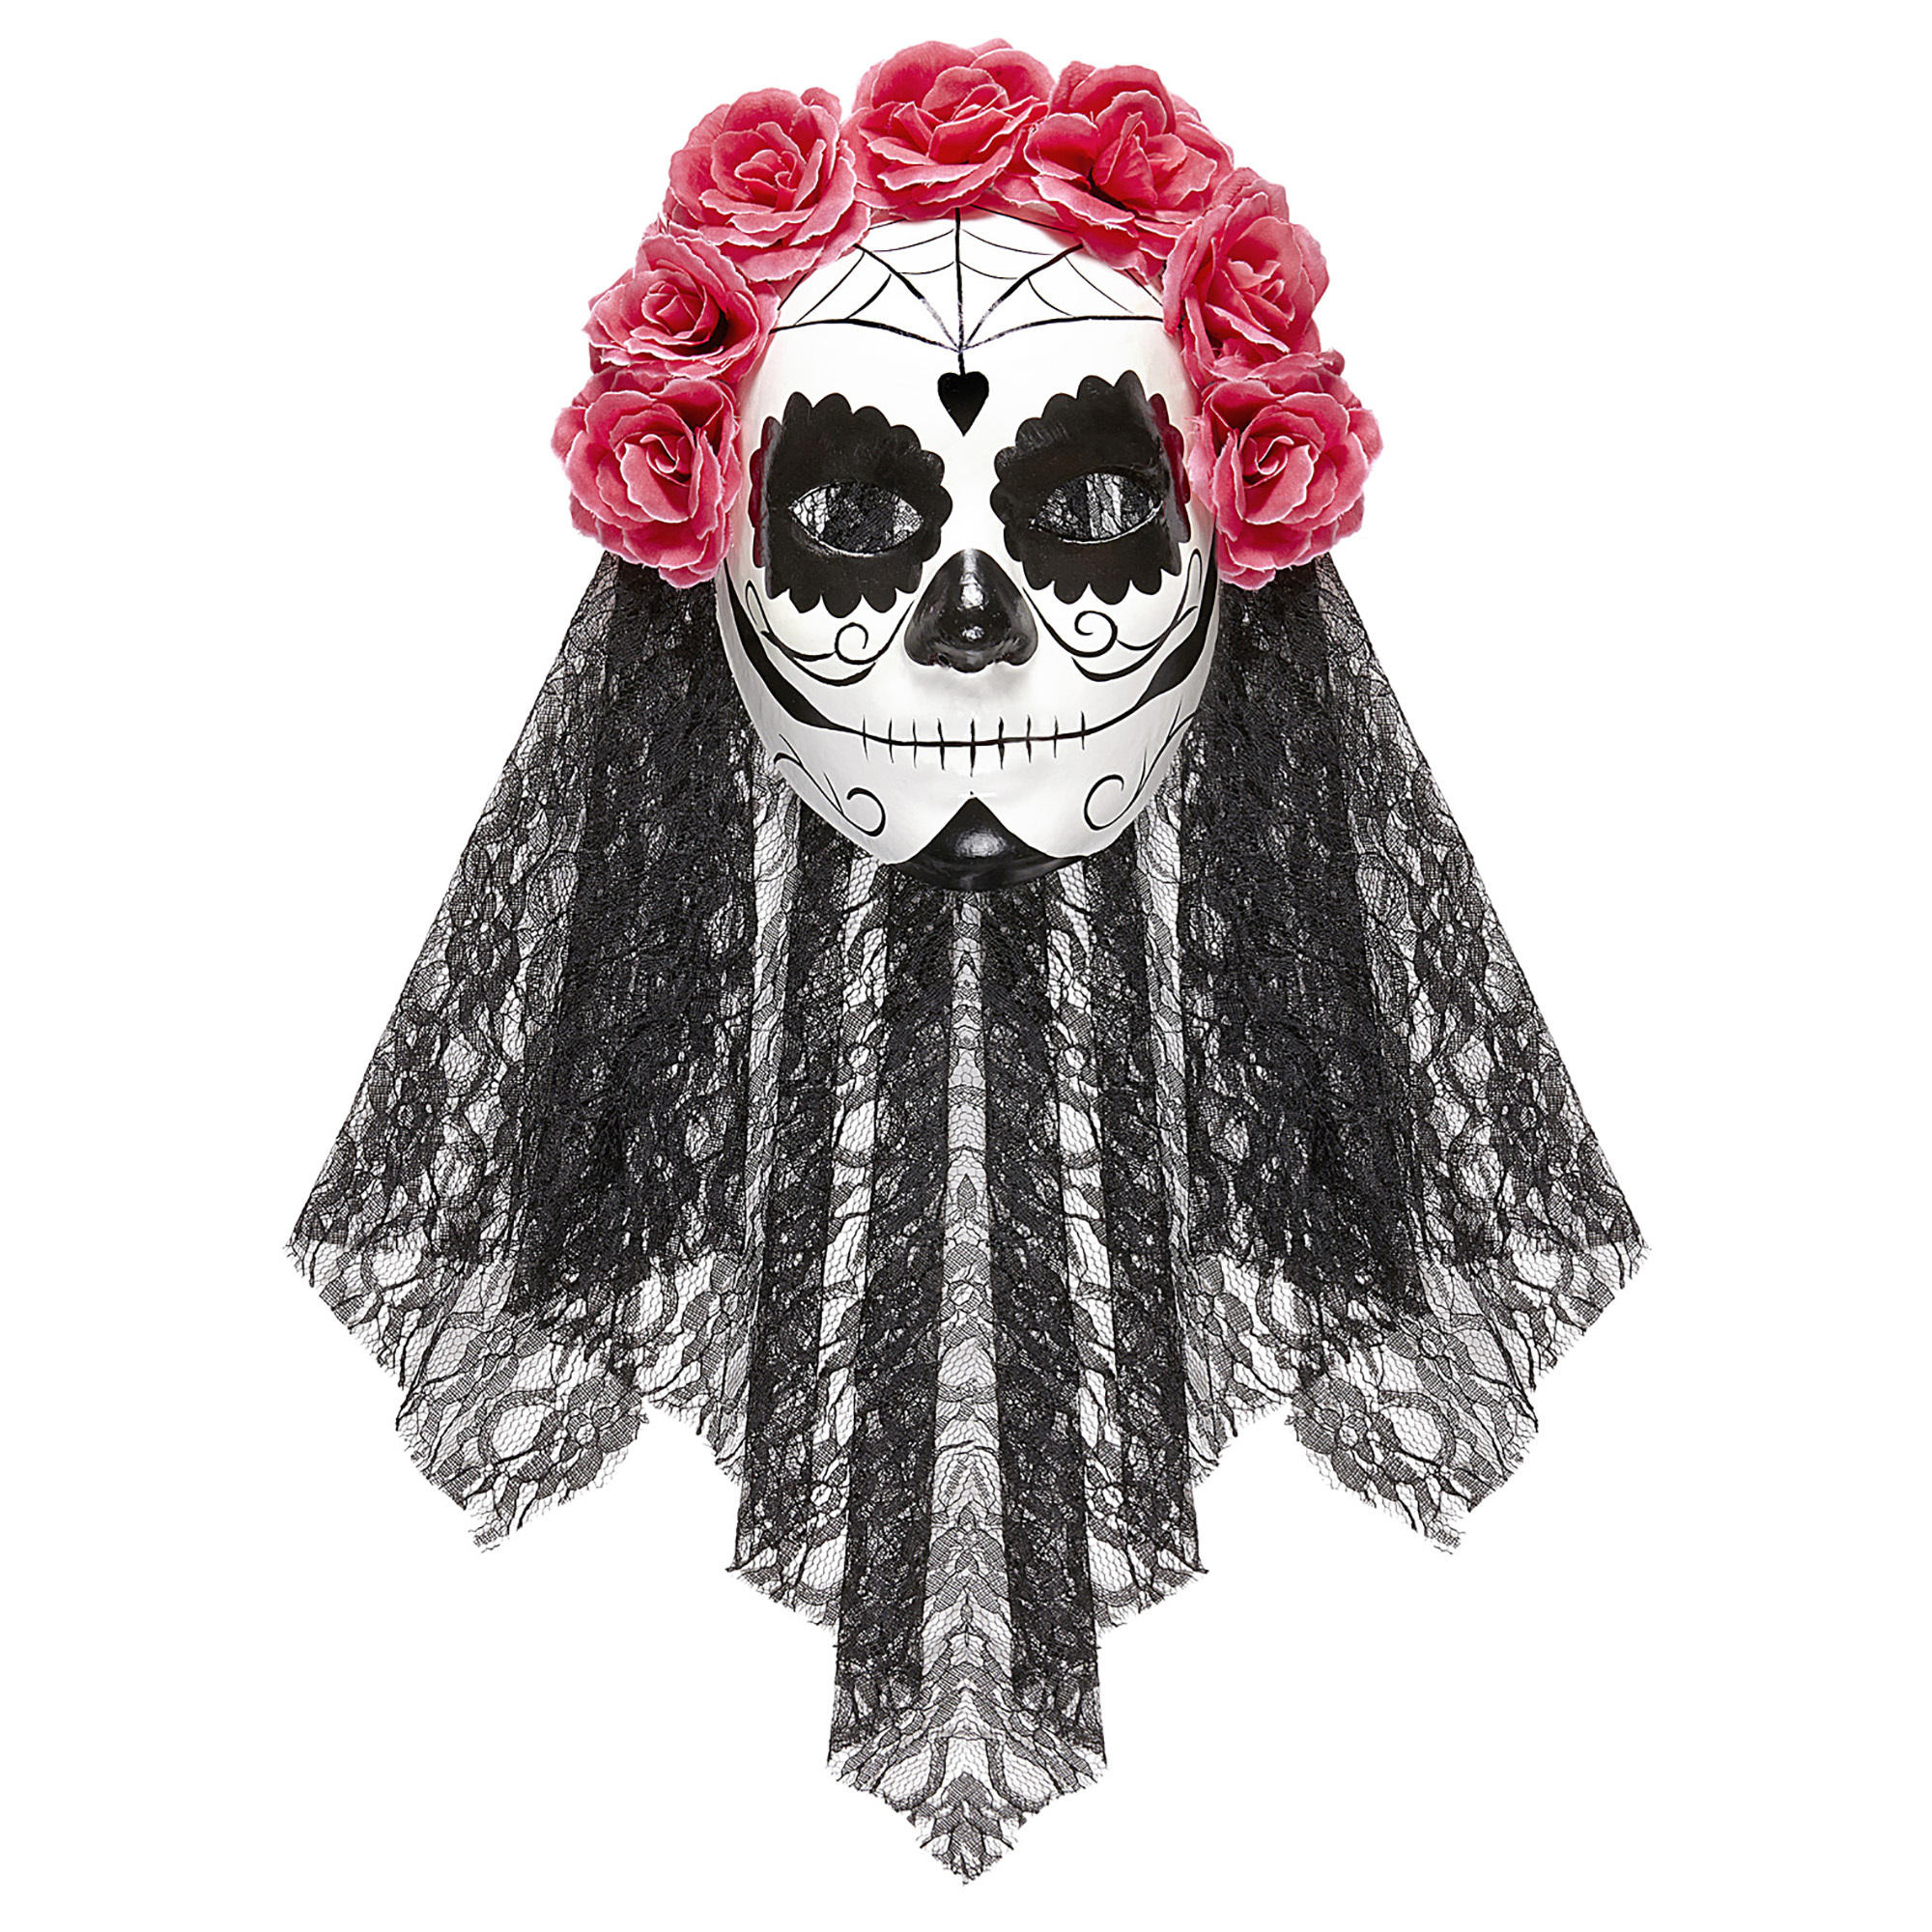 Bruid masker Dia de los muertos met zwarte sluier en rode rozen volwassen